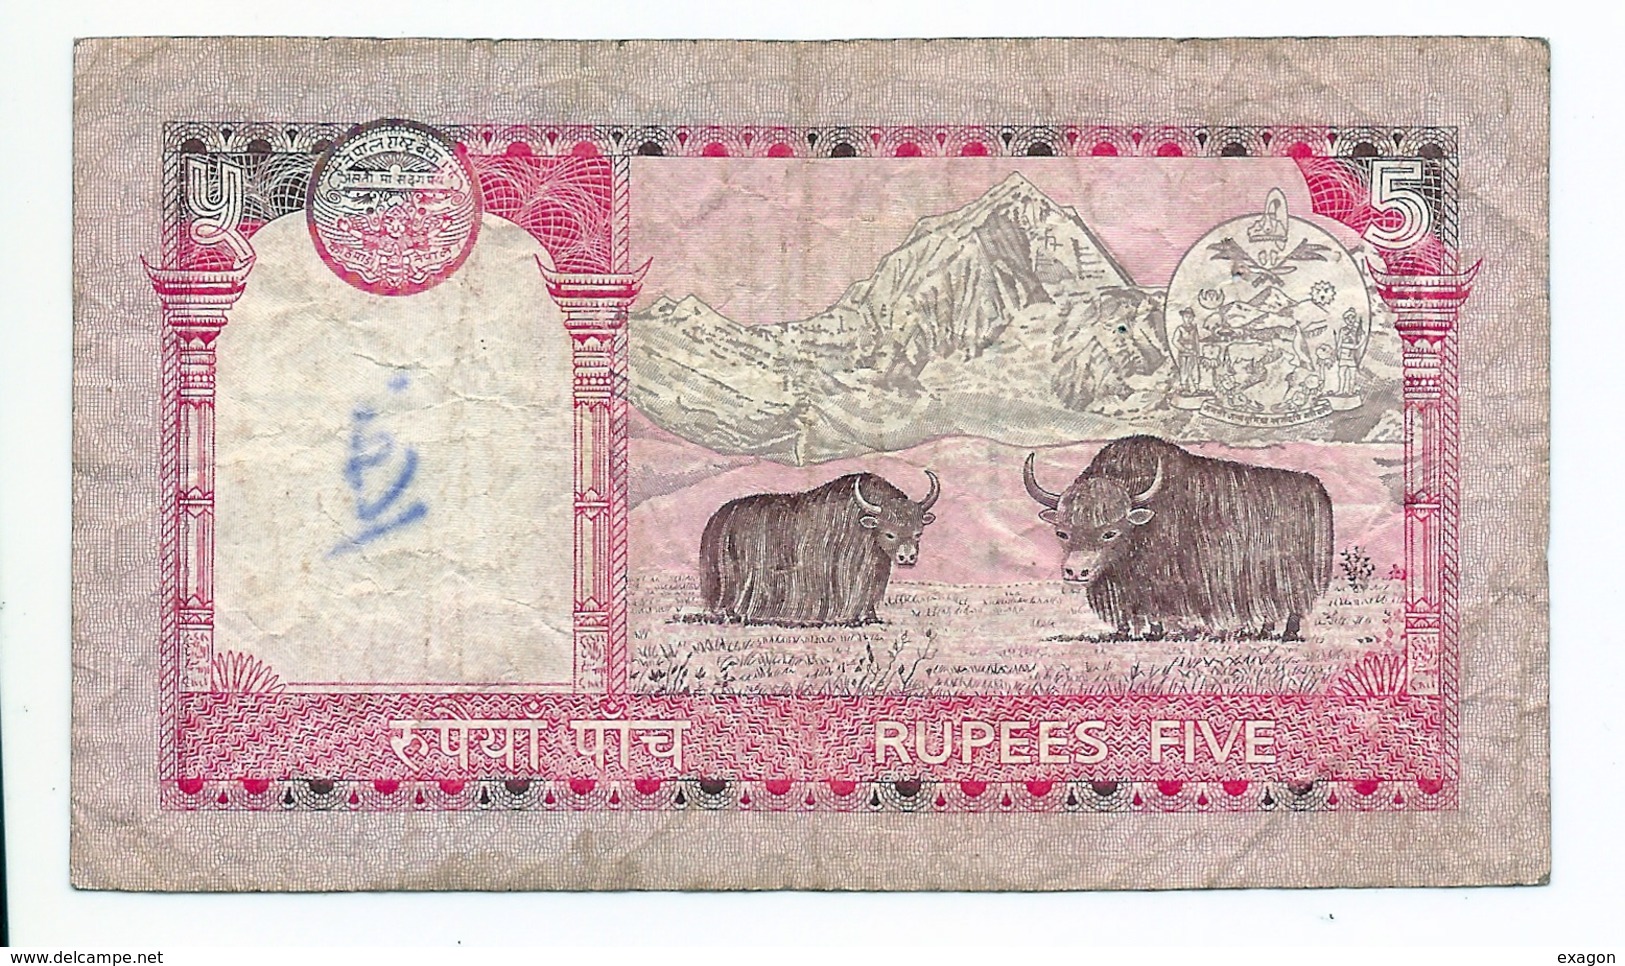 Lotto Di N. 2  Banconote   NEPAL   Da 5  Rupees  /  SRI LANKA   Da 5  Rupees  -   Anno 1985 - Other - Asia